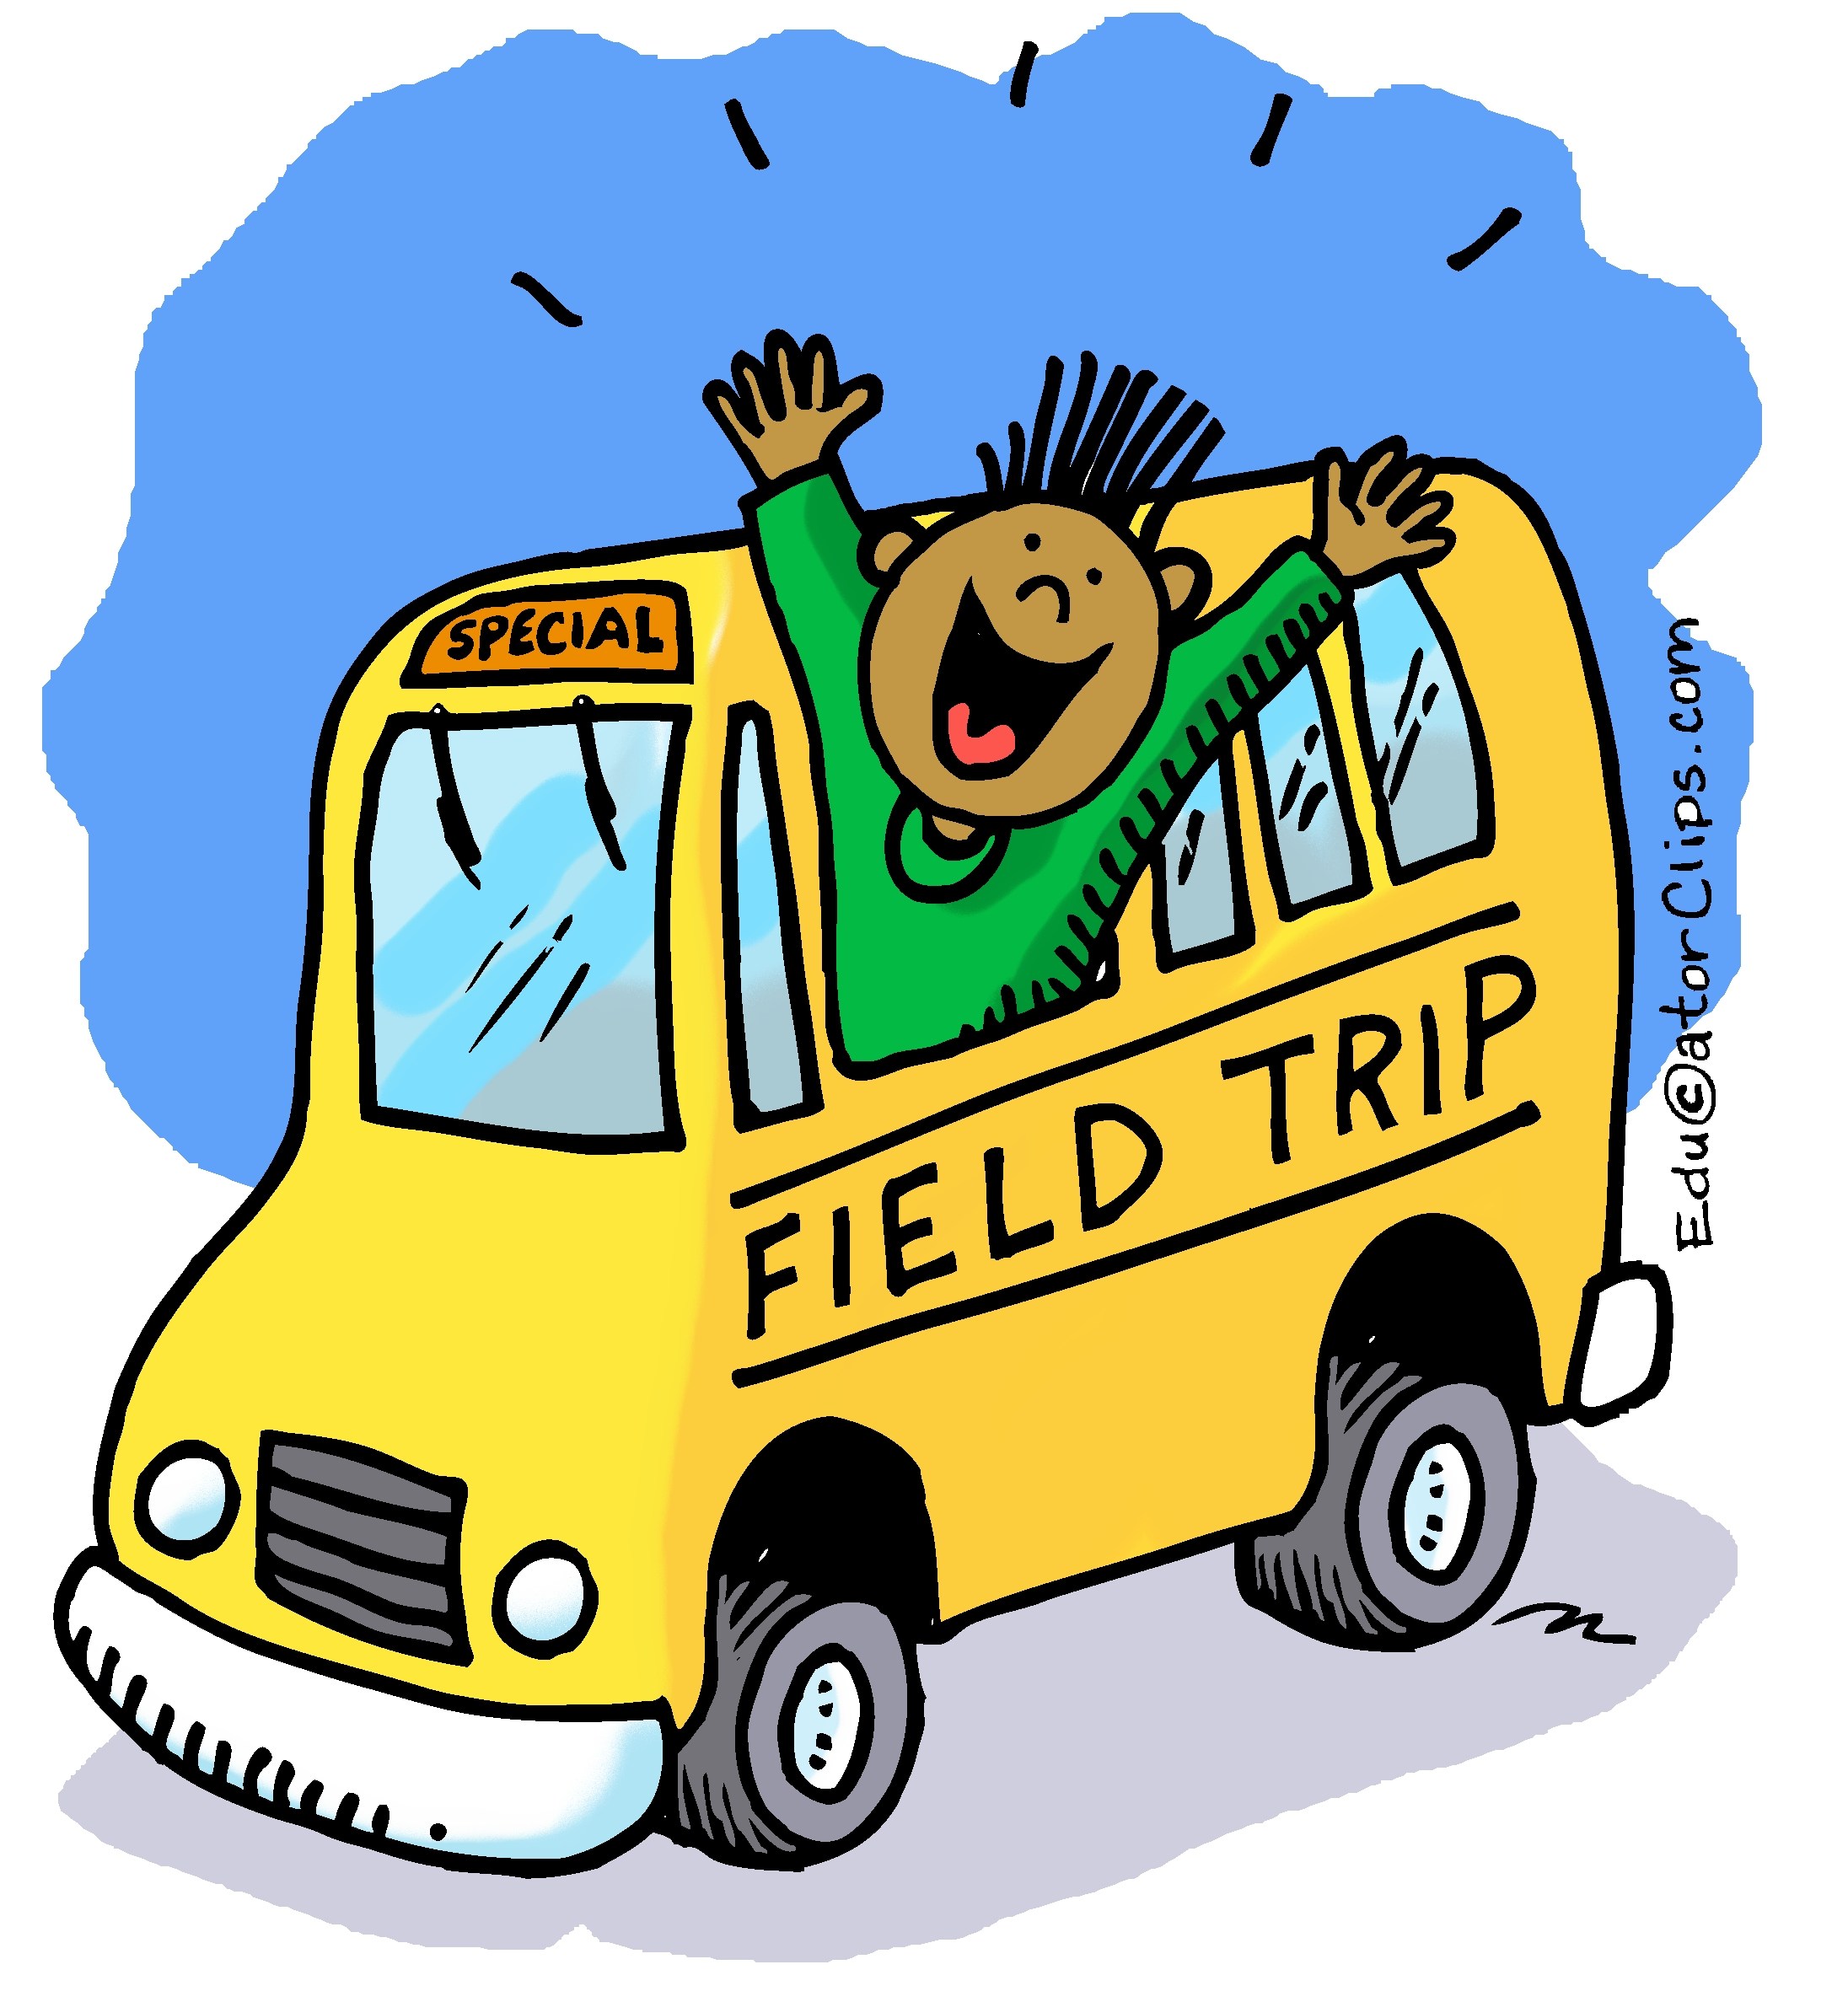 Field trip bus.